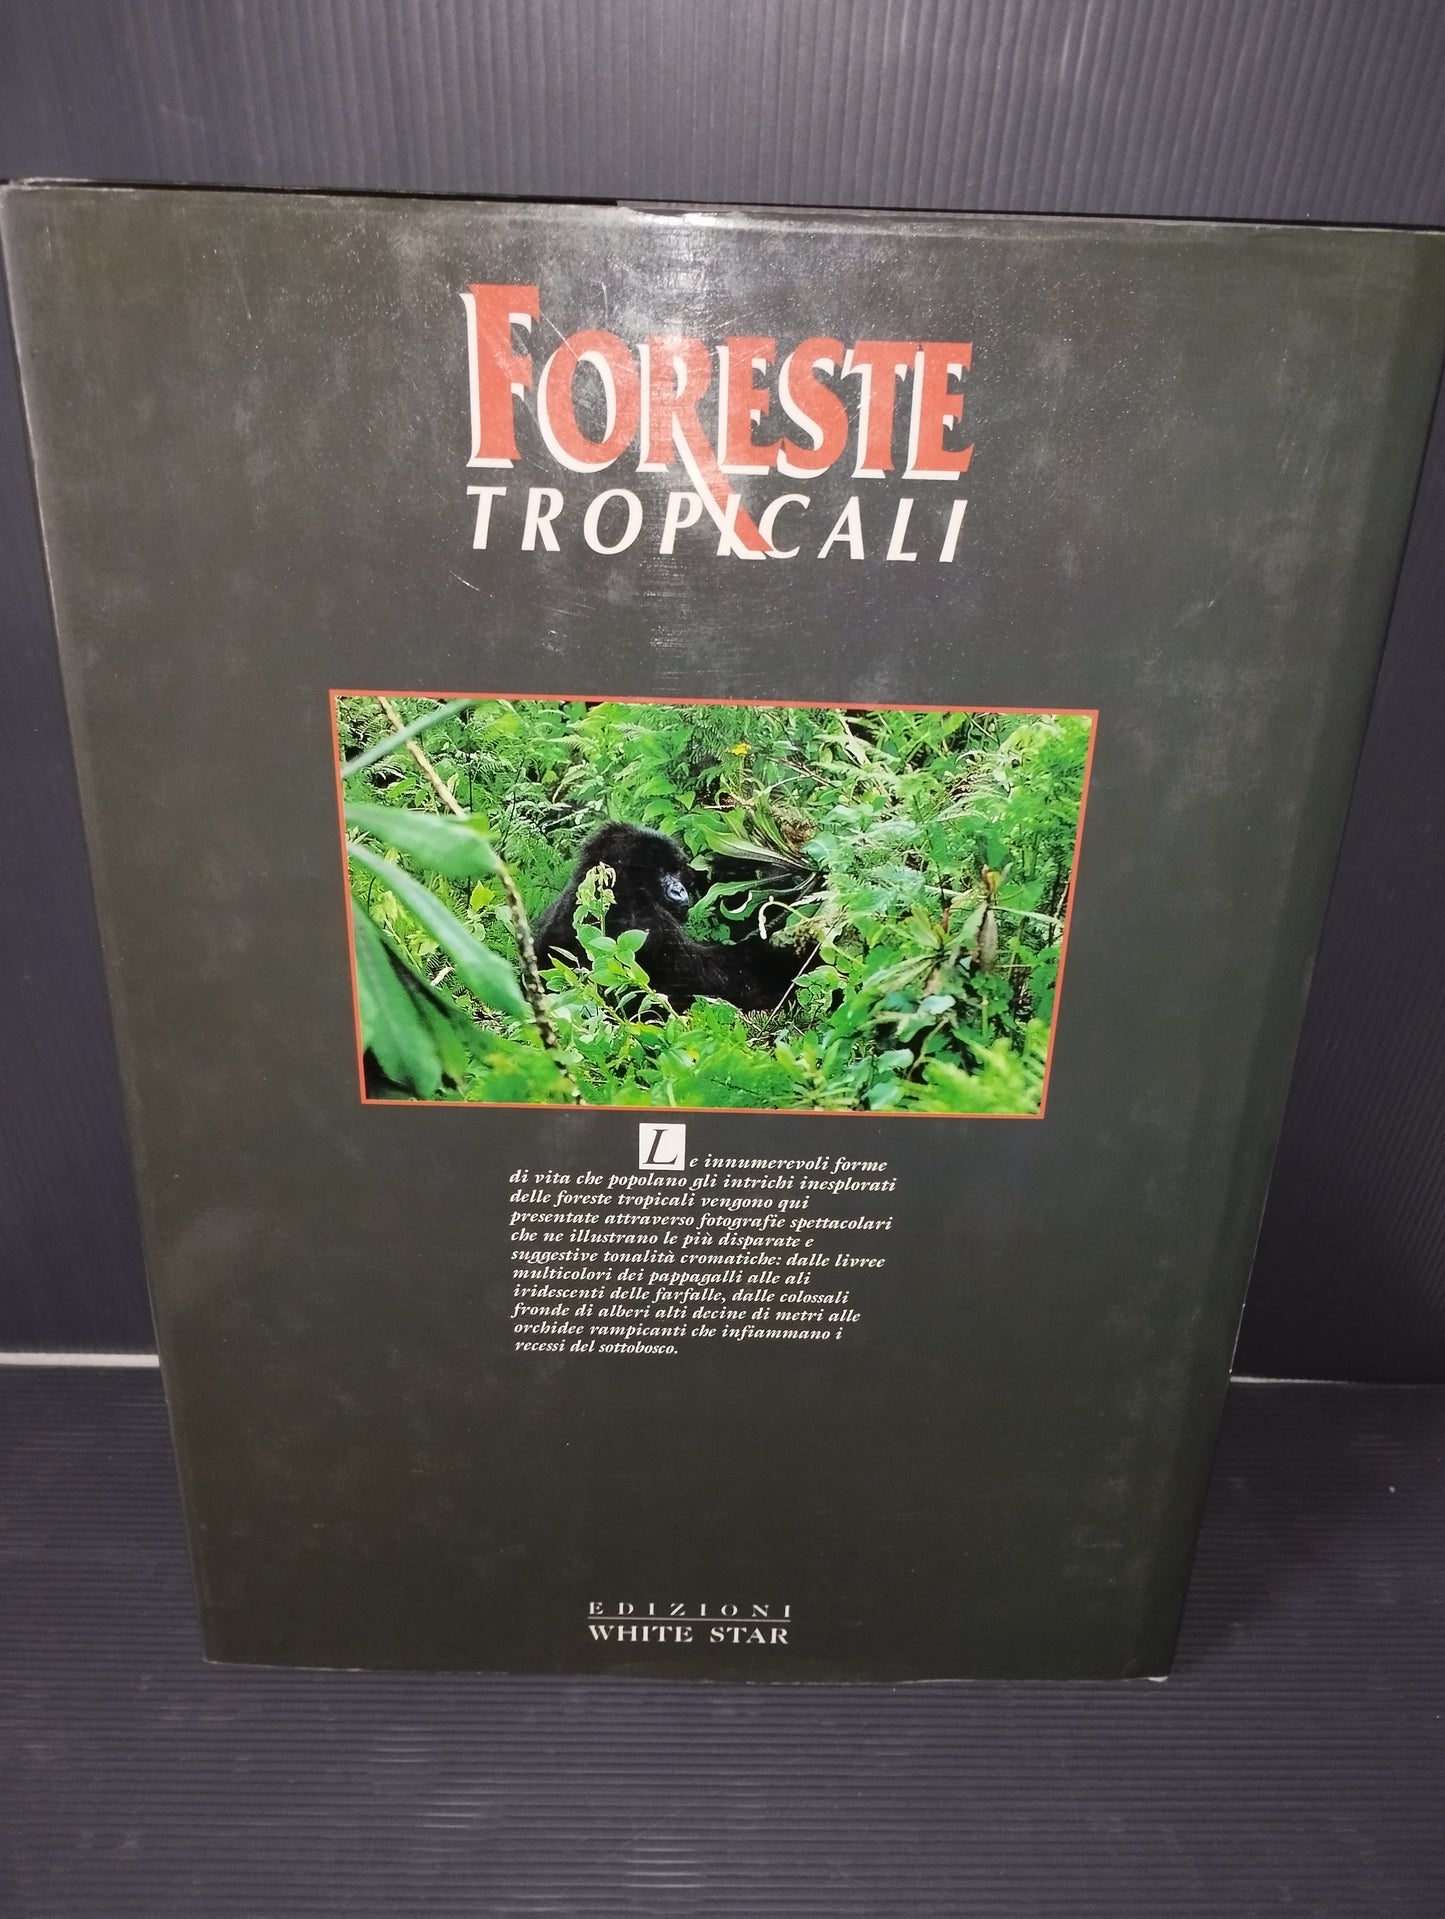 Libro "Foreste Tropicali" Francesco Petretti

Edito nel 1995 da Edizioni White Star